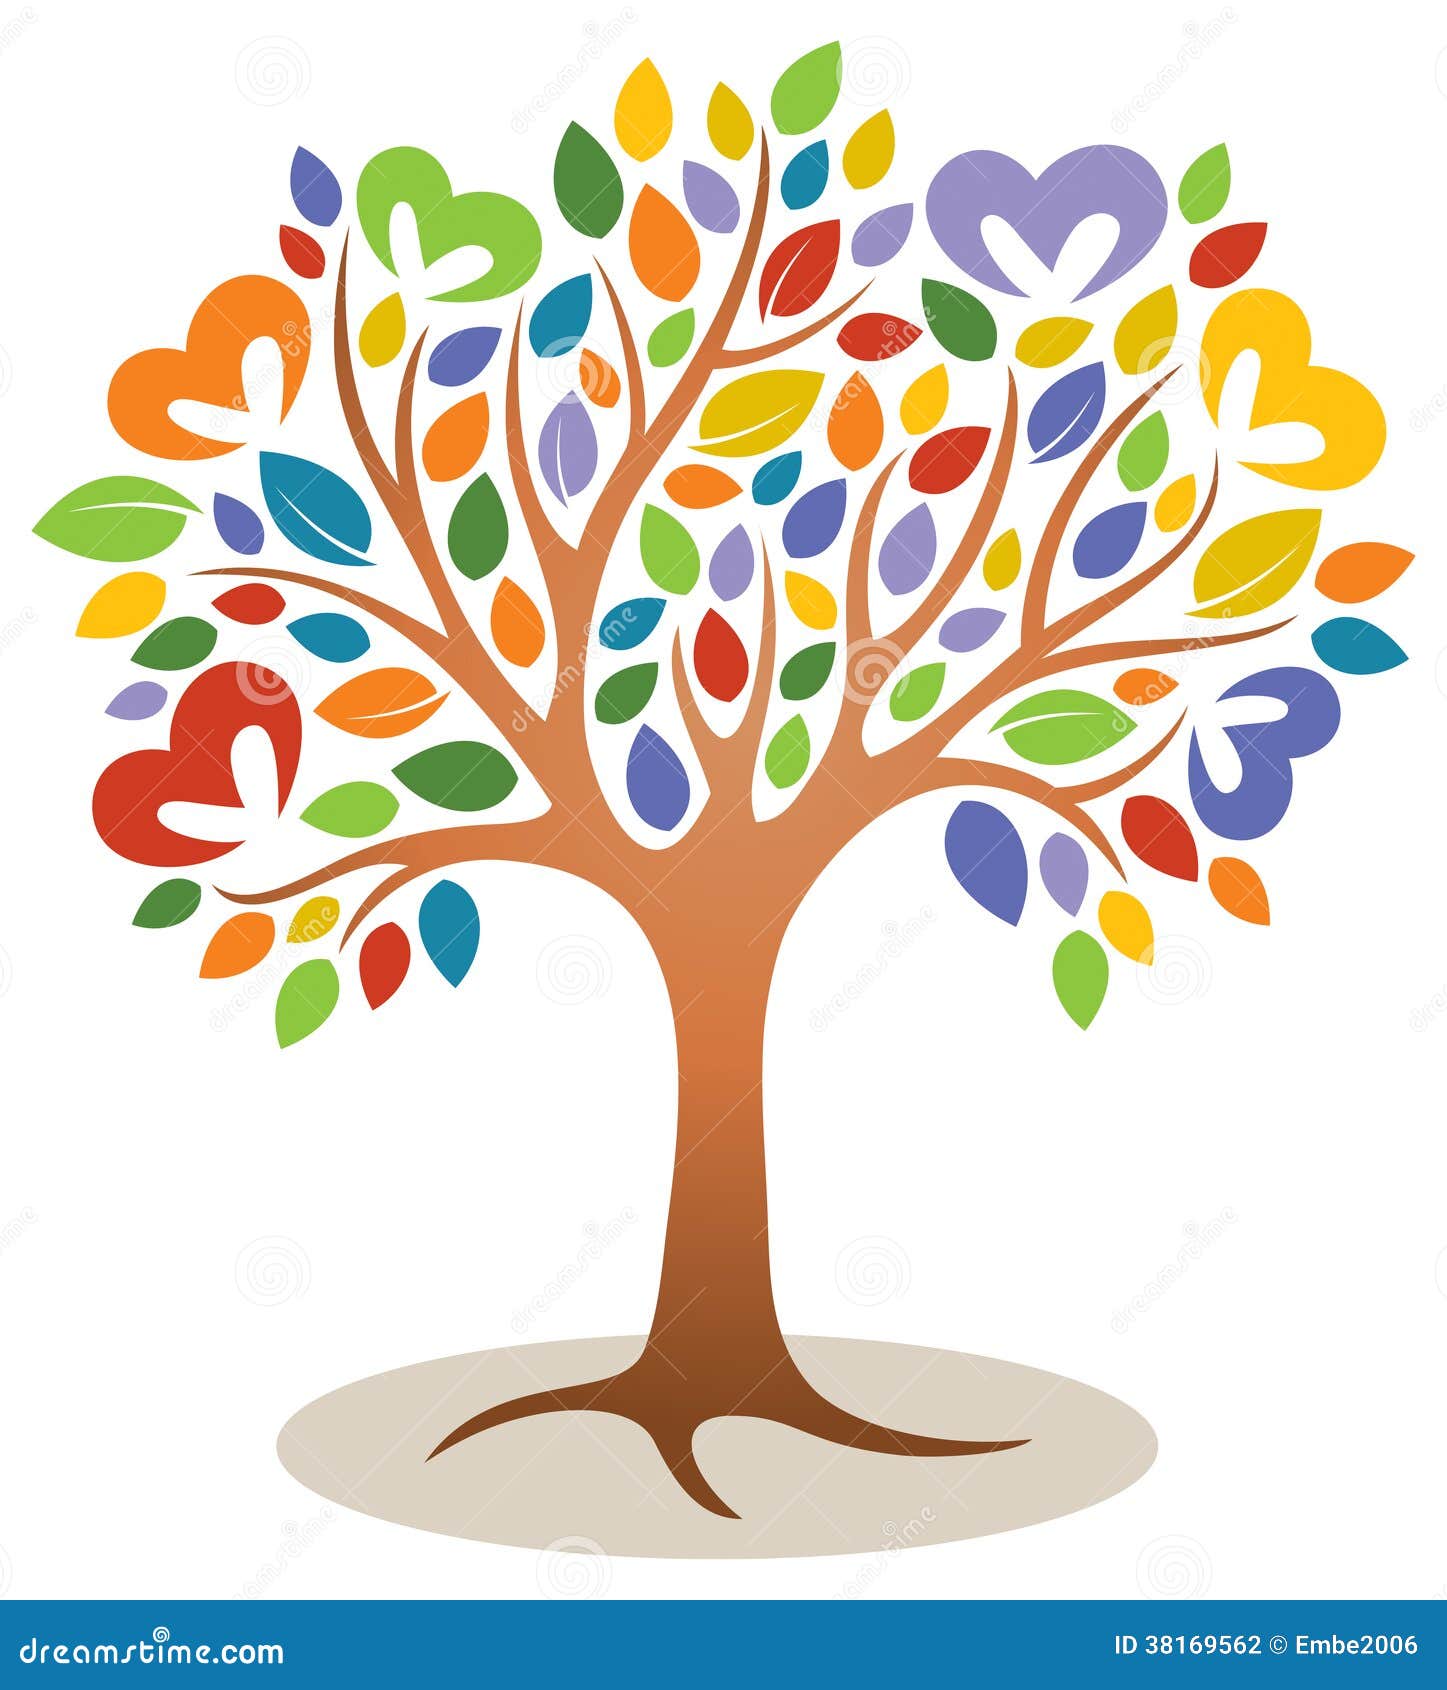 Heart Tree Logo Stock Photography - Image: 38169562